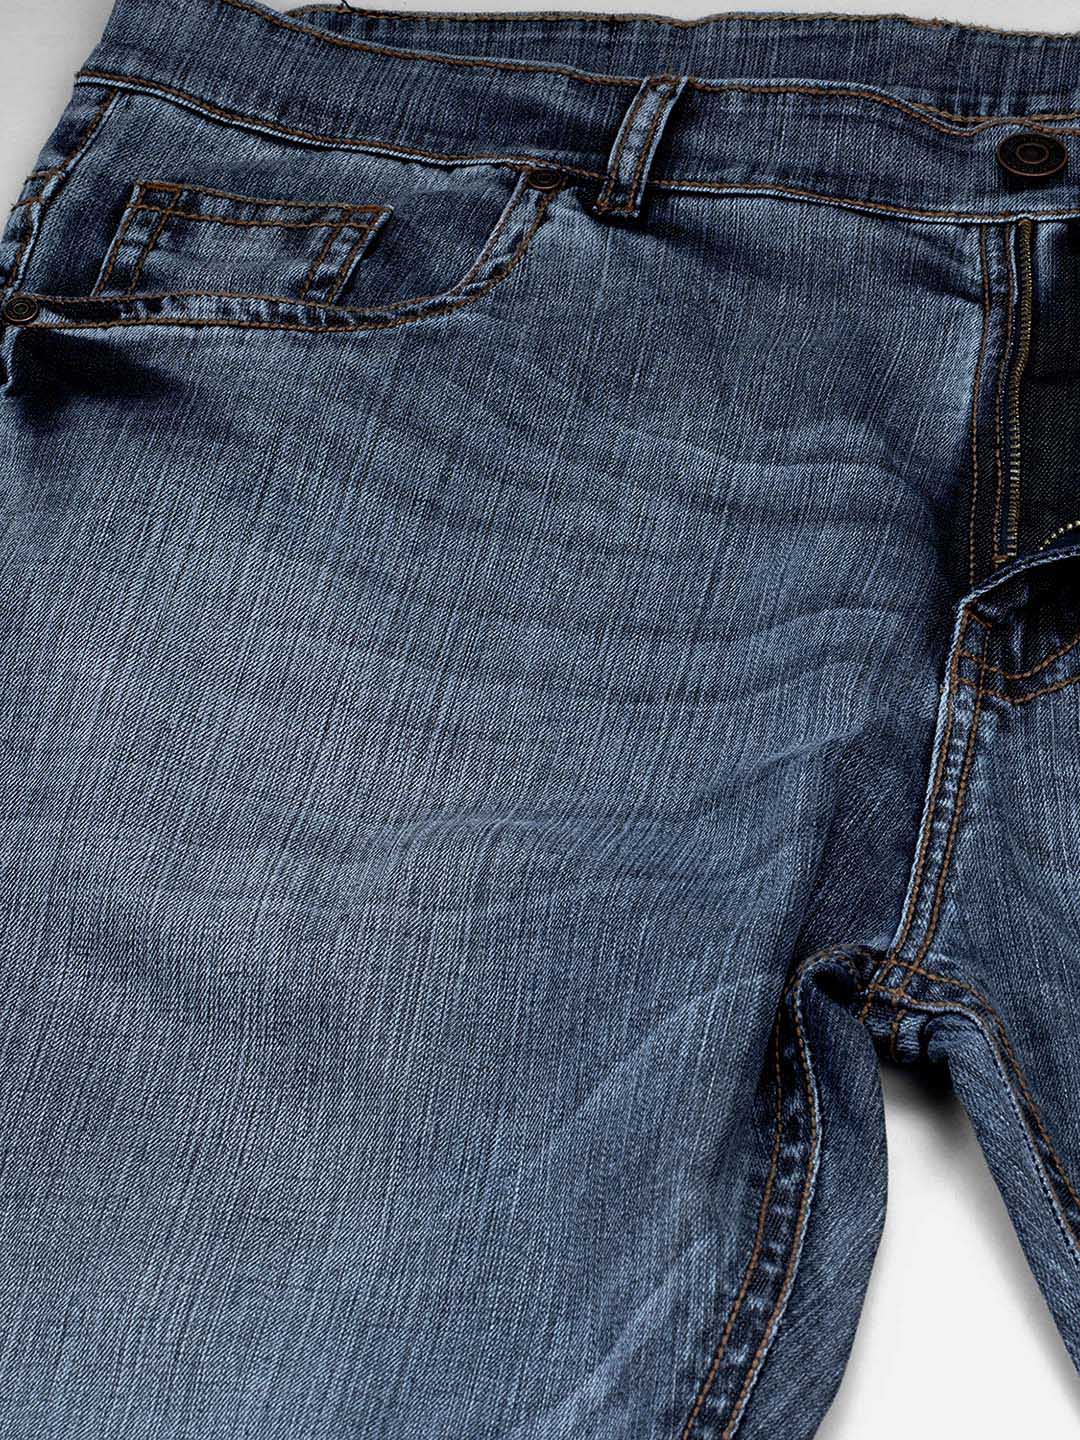 bottomwear/jeans/JPJ2555/jpj2555-2.jpg